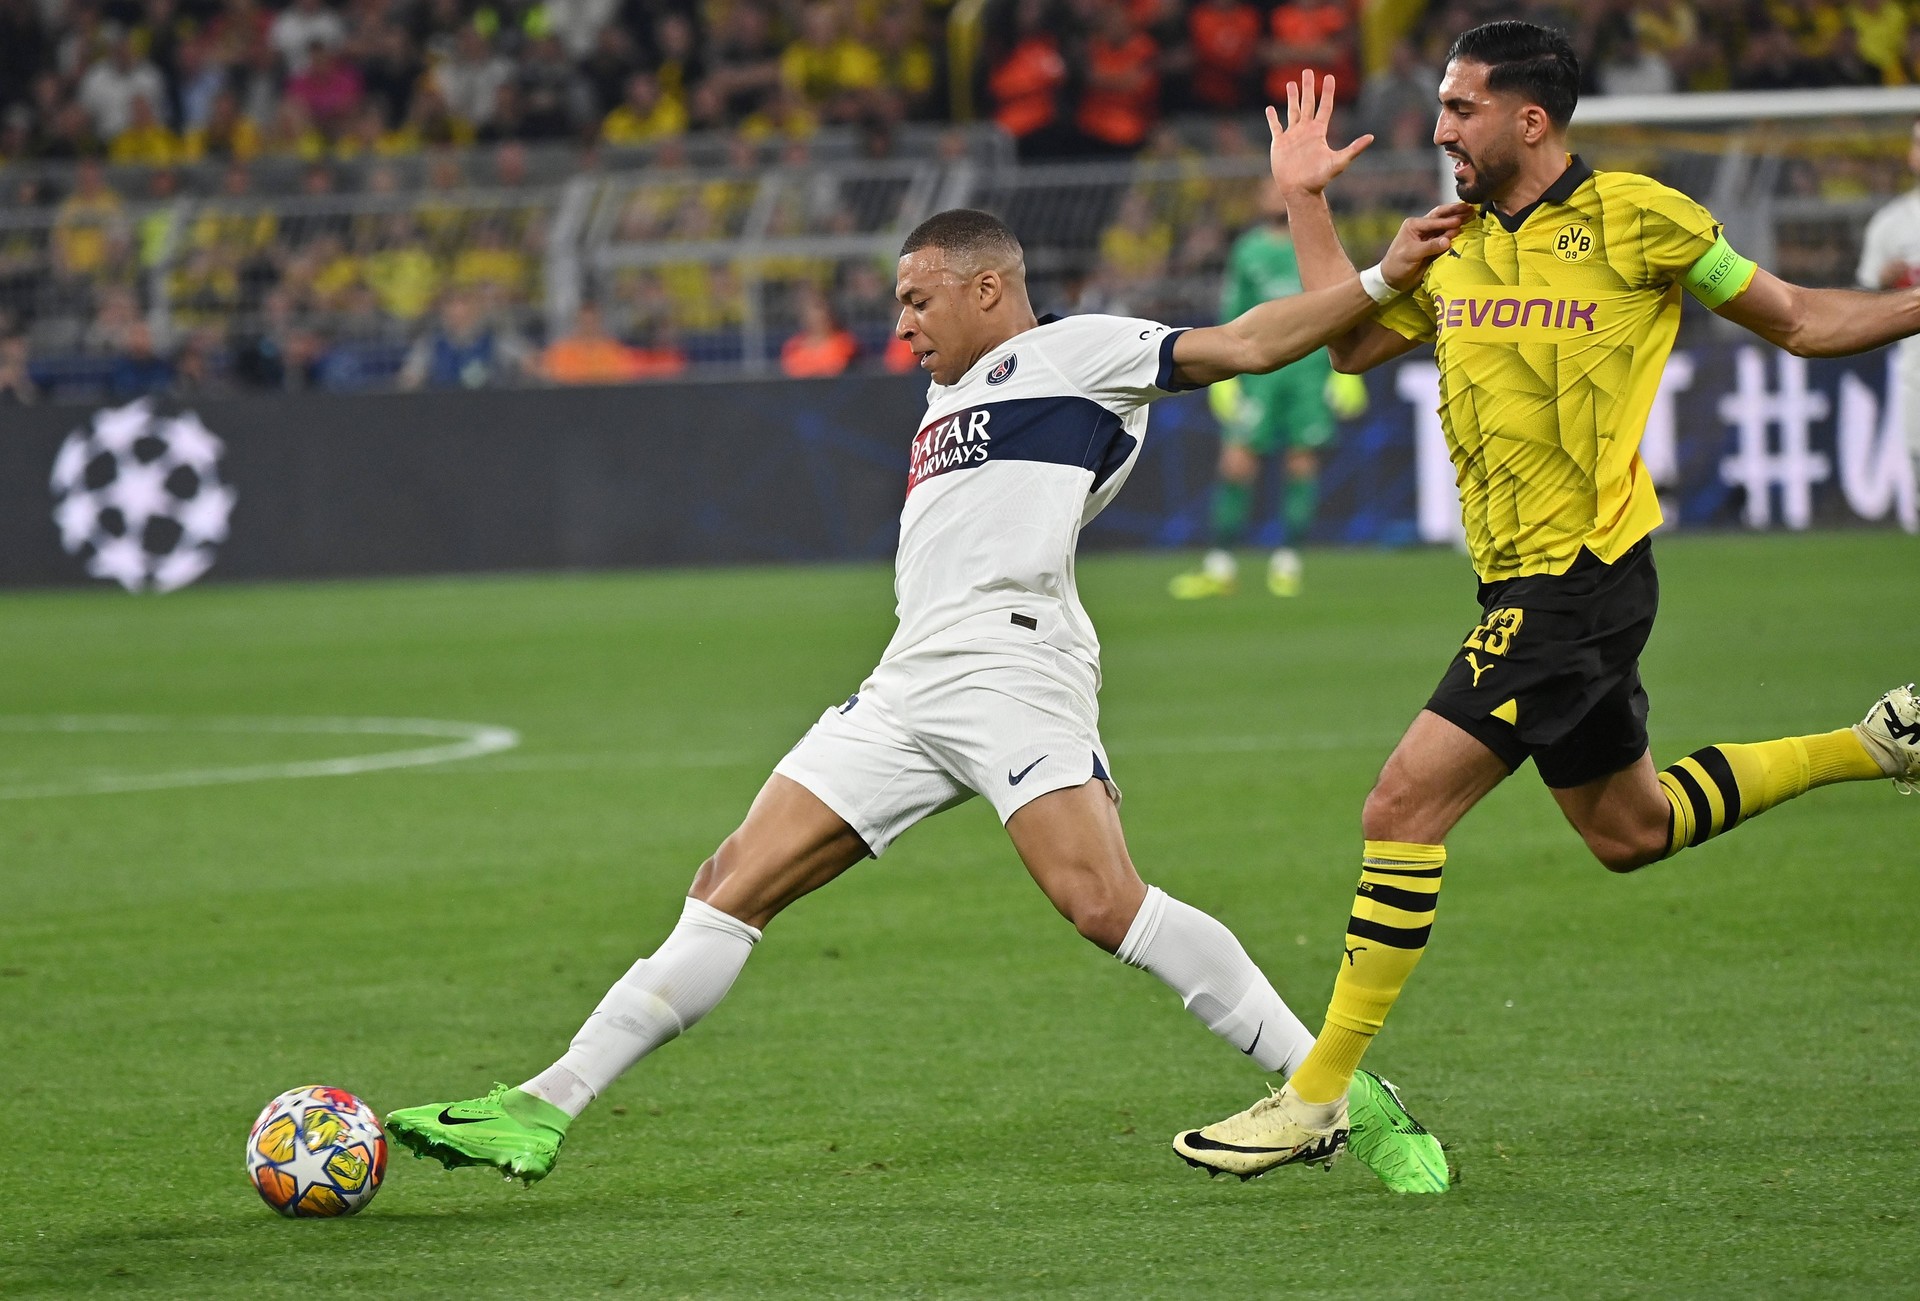 VIDEO | Borussia Dortmund - PSG 1-0, în direct la Prima Sport 1 şi online pe PrimaPlay.ro. Fulkurg deschide scorul!